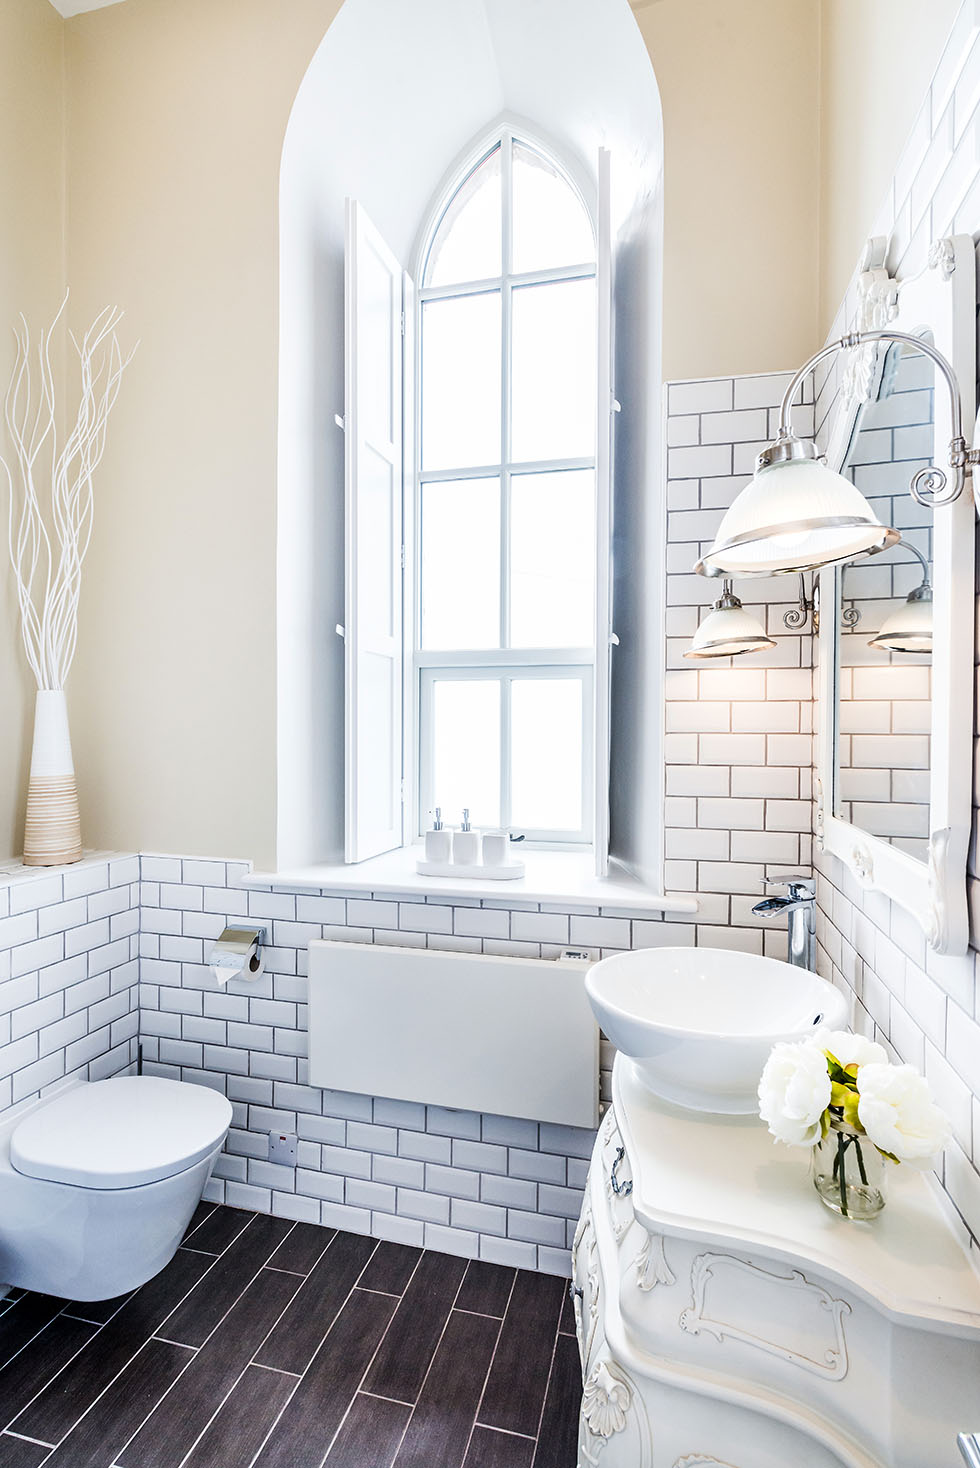 Phòng tắm với những họa tiết cổ điển kết hợp tone mà trắng hiện đại